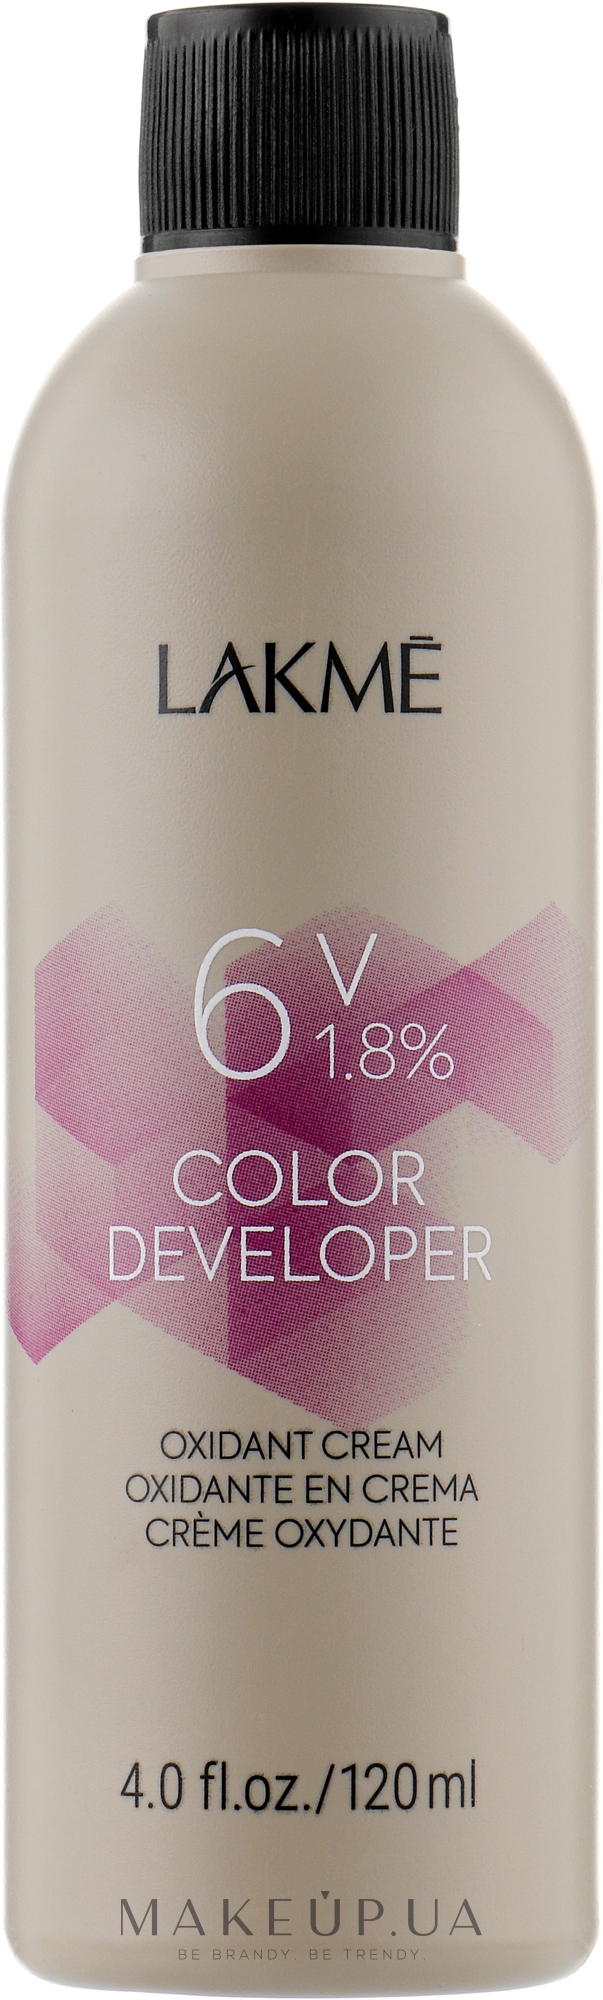 Крем-окислювач - Lakme Color Developer 6V (1,8%) — фото 120ml